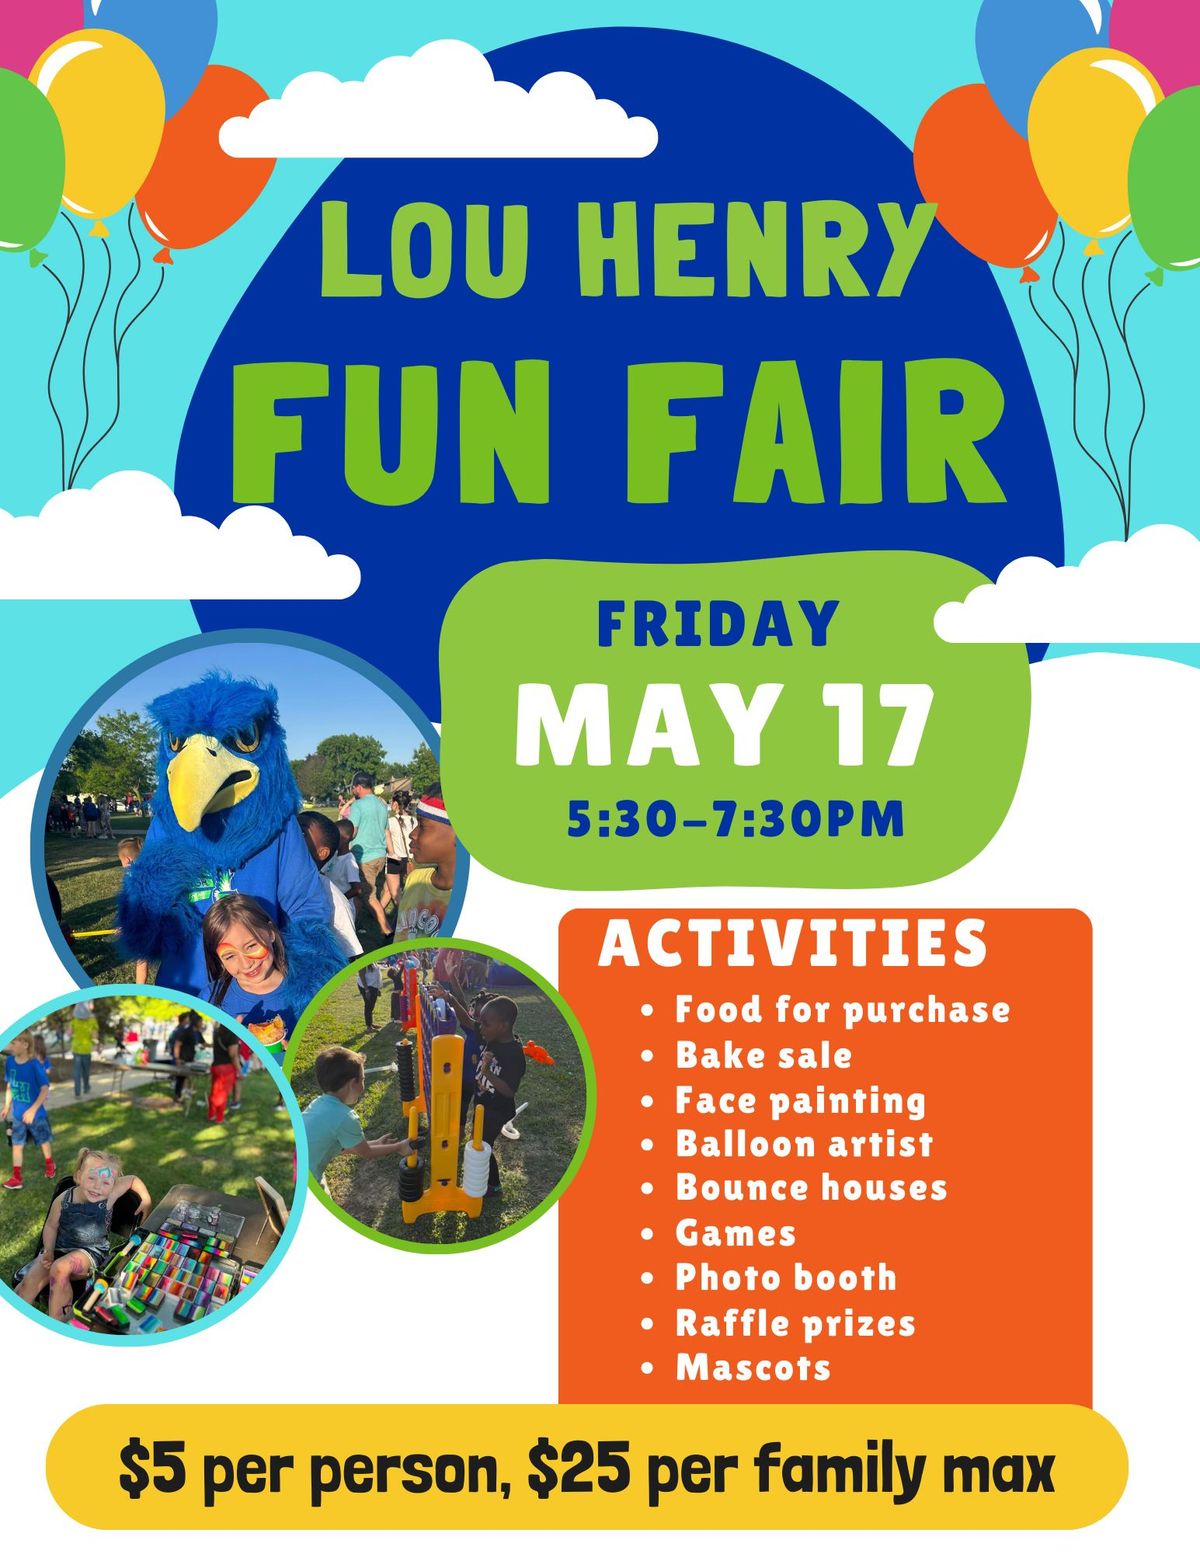 Lou Henry Fun Fair